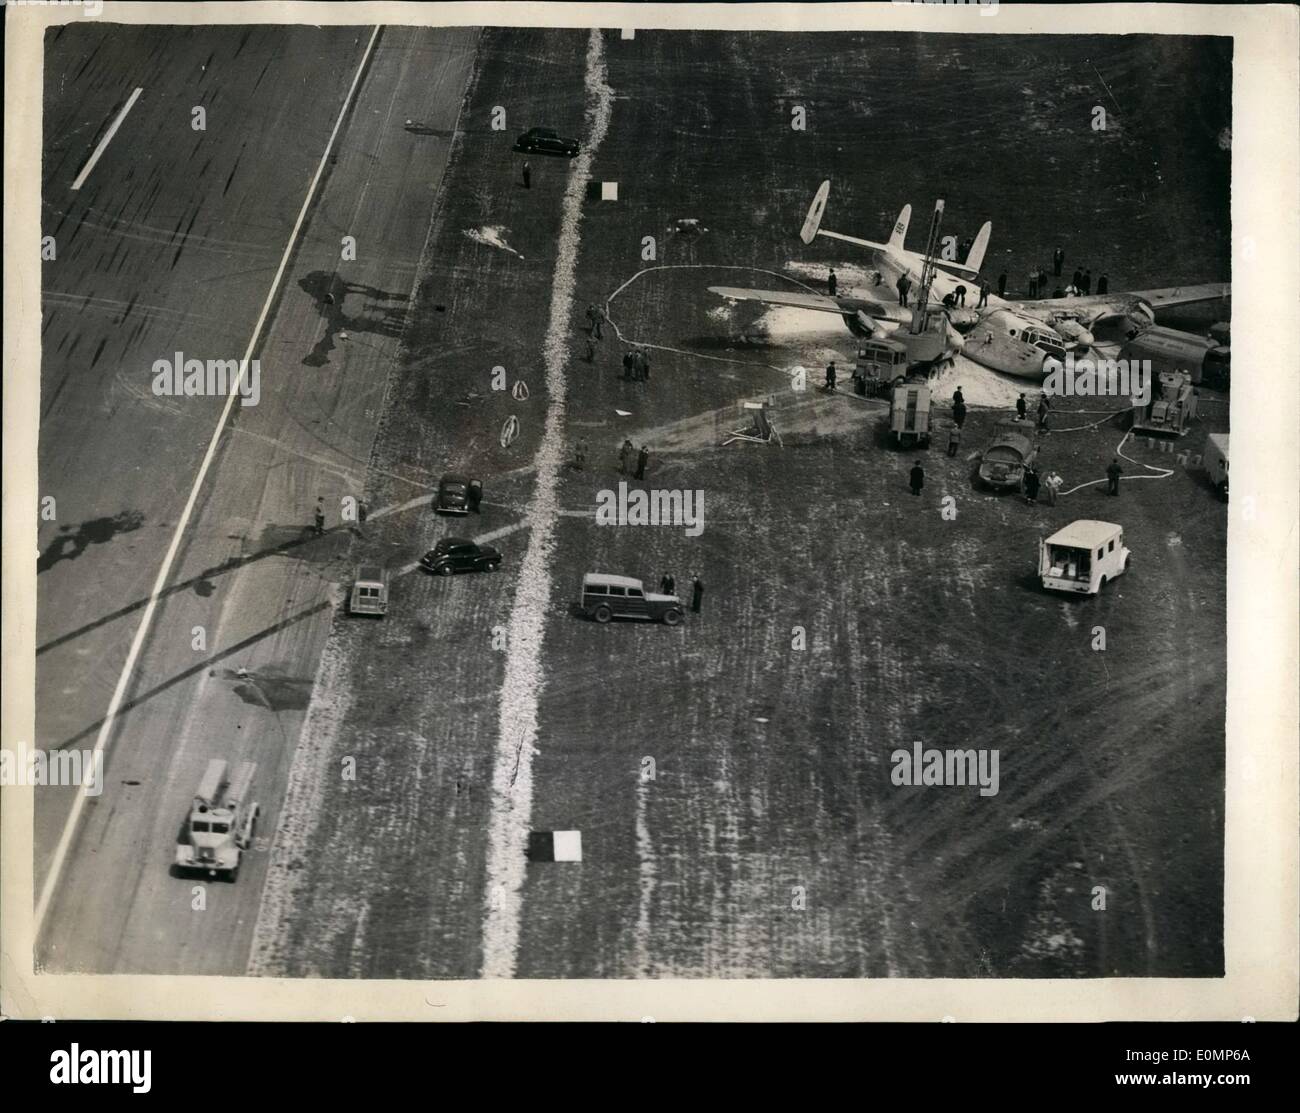 Avril 04, 1956 - Deux meurent dans un accident d'avion. : R.UN&gt;F. homme et une petite fille ont été tuées, et quatre autres blessés lorsqu'un avion de ligne avec 54 personnes à bord, s'est écrasé à l'aéroport de Stansted, Essex aujourd'hui. L'avion quadrimoteur York décollait avec les familles et les militaires pour Cypm's et l'Irak lorsqu'il plongea hors de la piste. Les femmes avec des bébés dans leurs bras comme brouillés de l'avion de patrouille jaillit des citernes détruites. Les vapeurs denses tourné les niveaux cite de l'avion dans une chambre à gaz. Pompiers pompée l'oxygène dans l'épave pour garder le peuple pris au piège en vie Banque D'Images